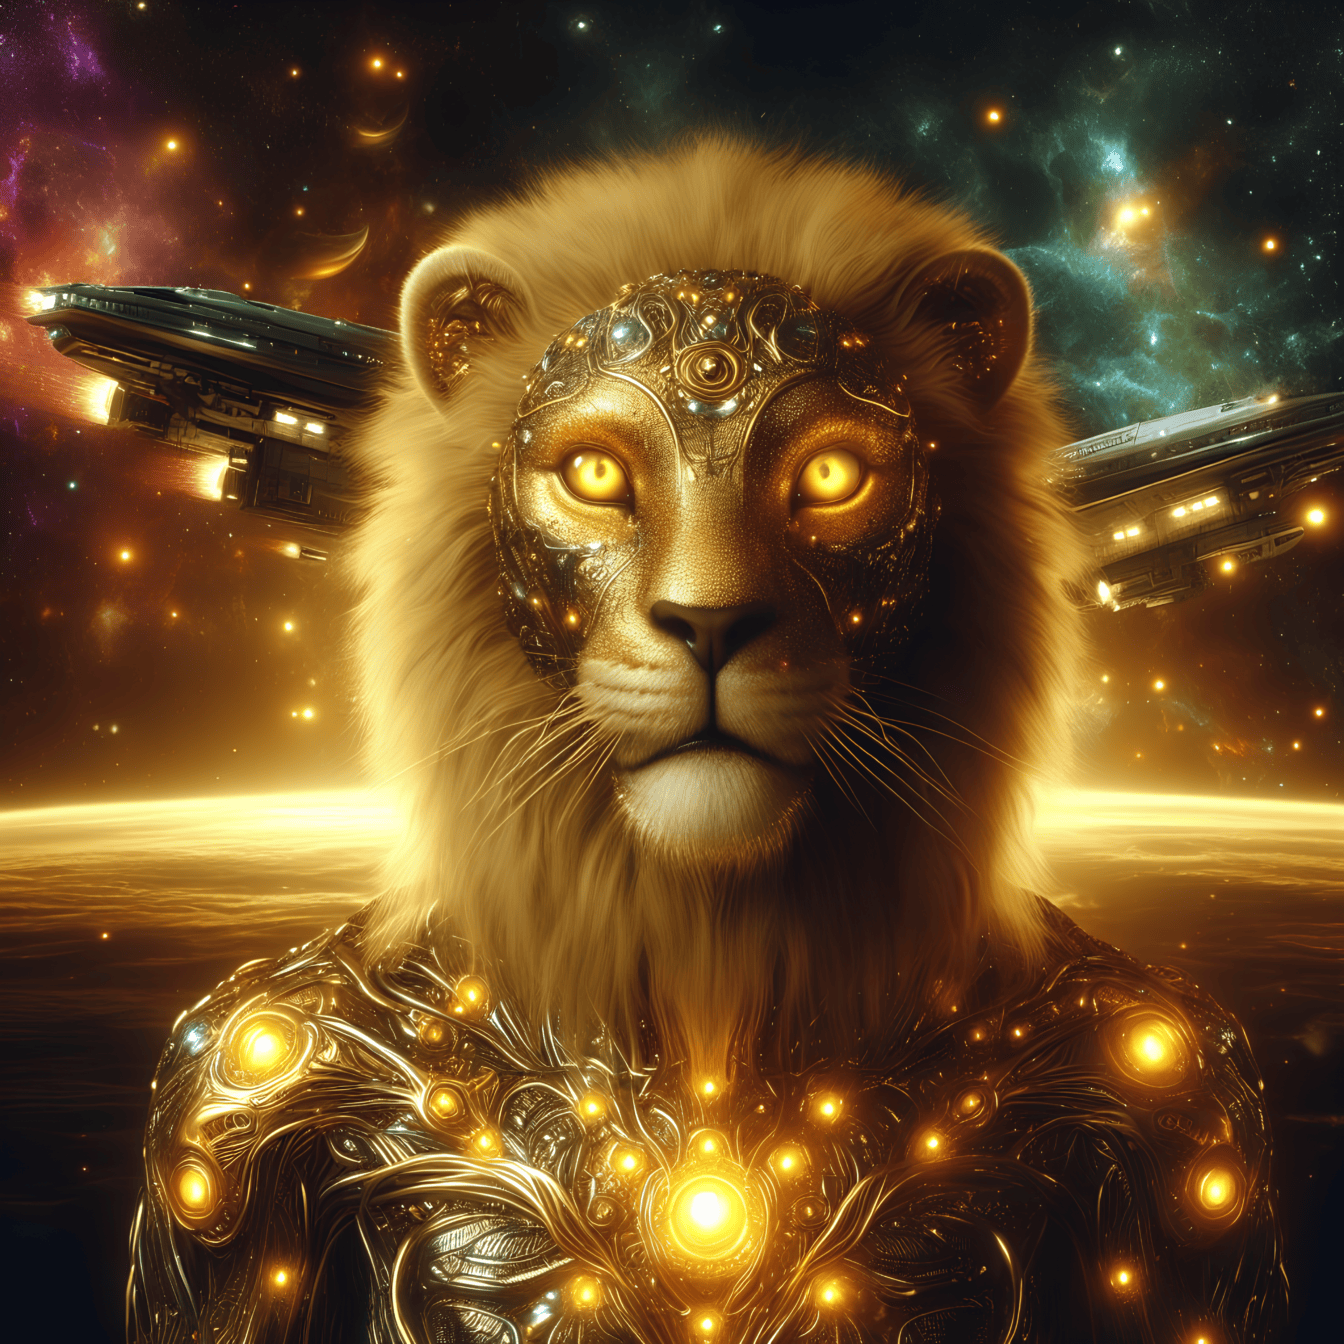 Muotokuva kultaisesta jumaluudesta, leijona-kyborgi-ulkomaalaisesta hehkuvassa panssarissa, avaruusalukset taustalla